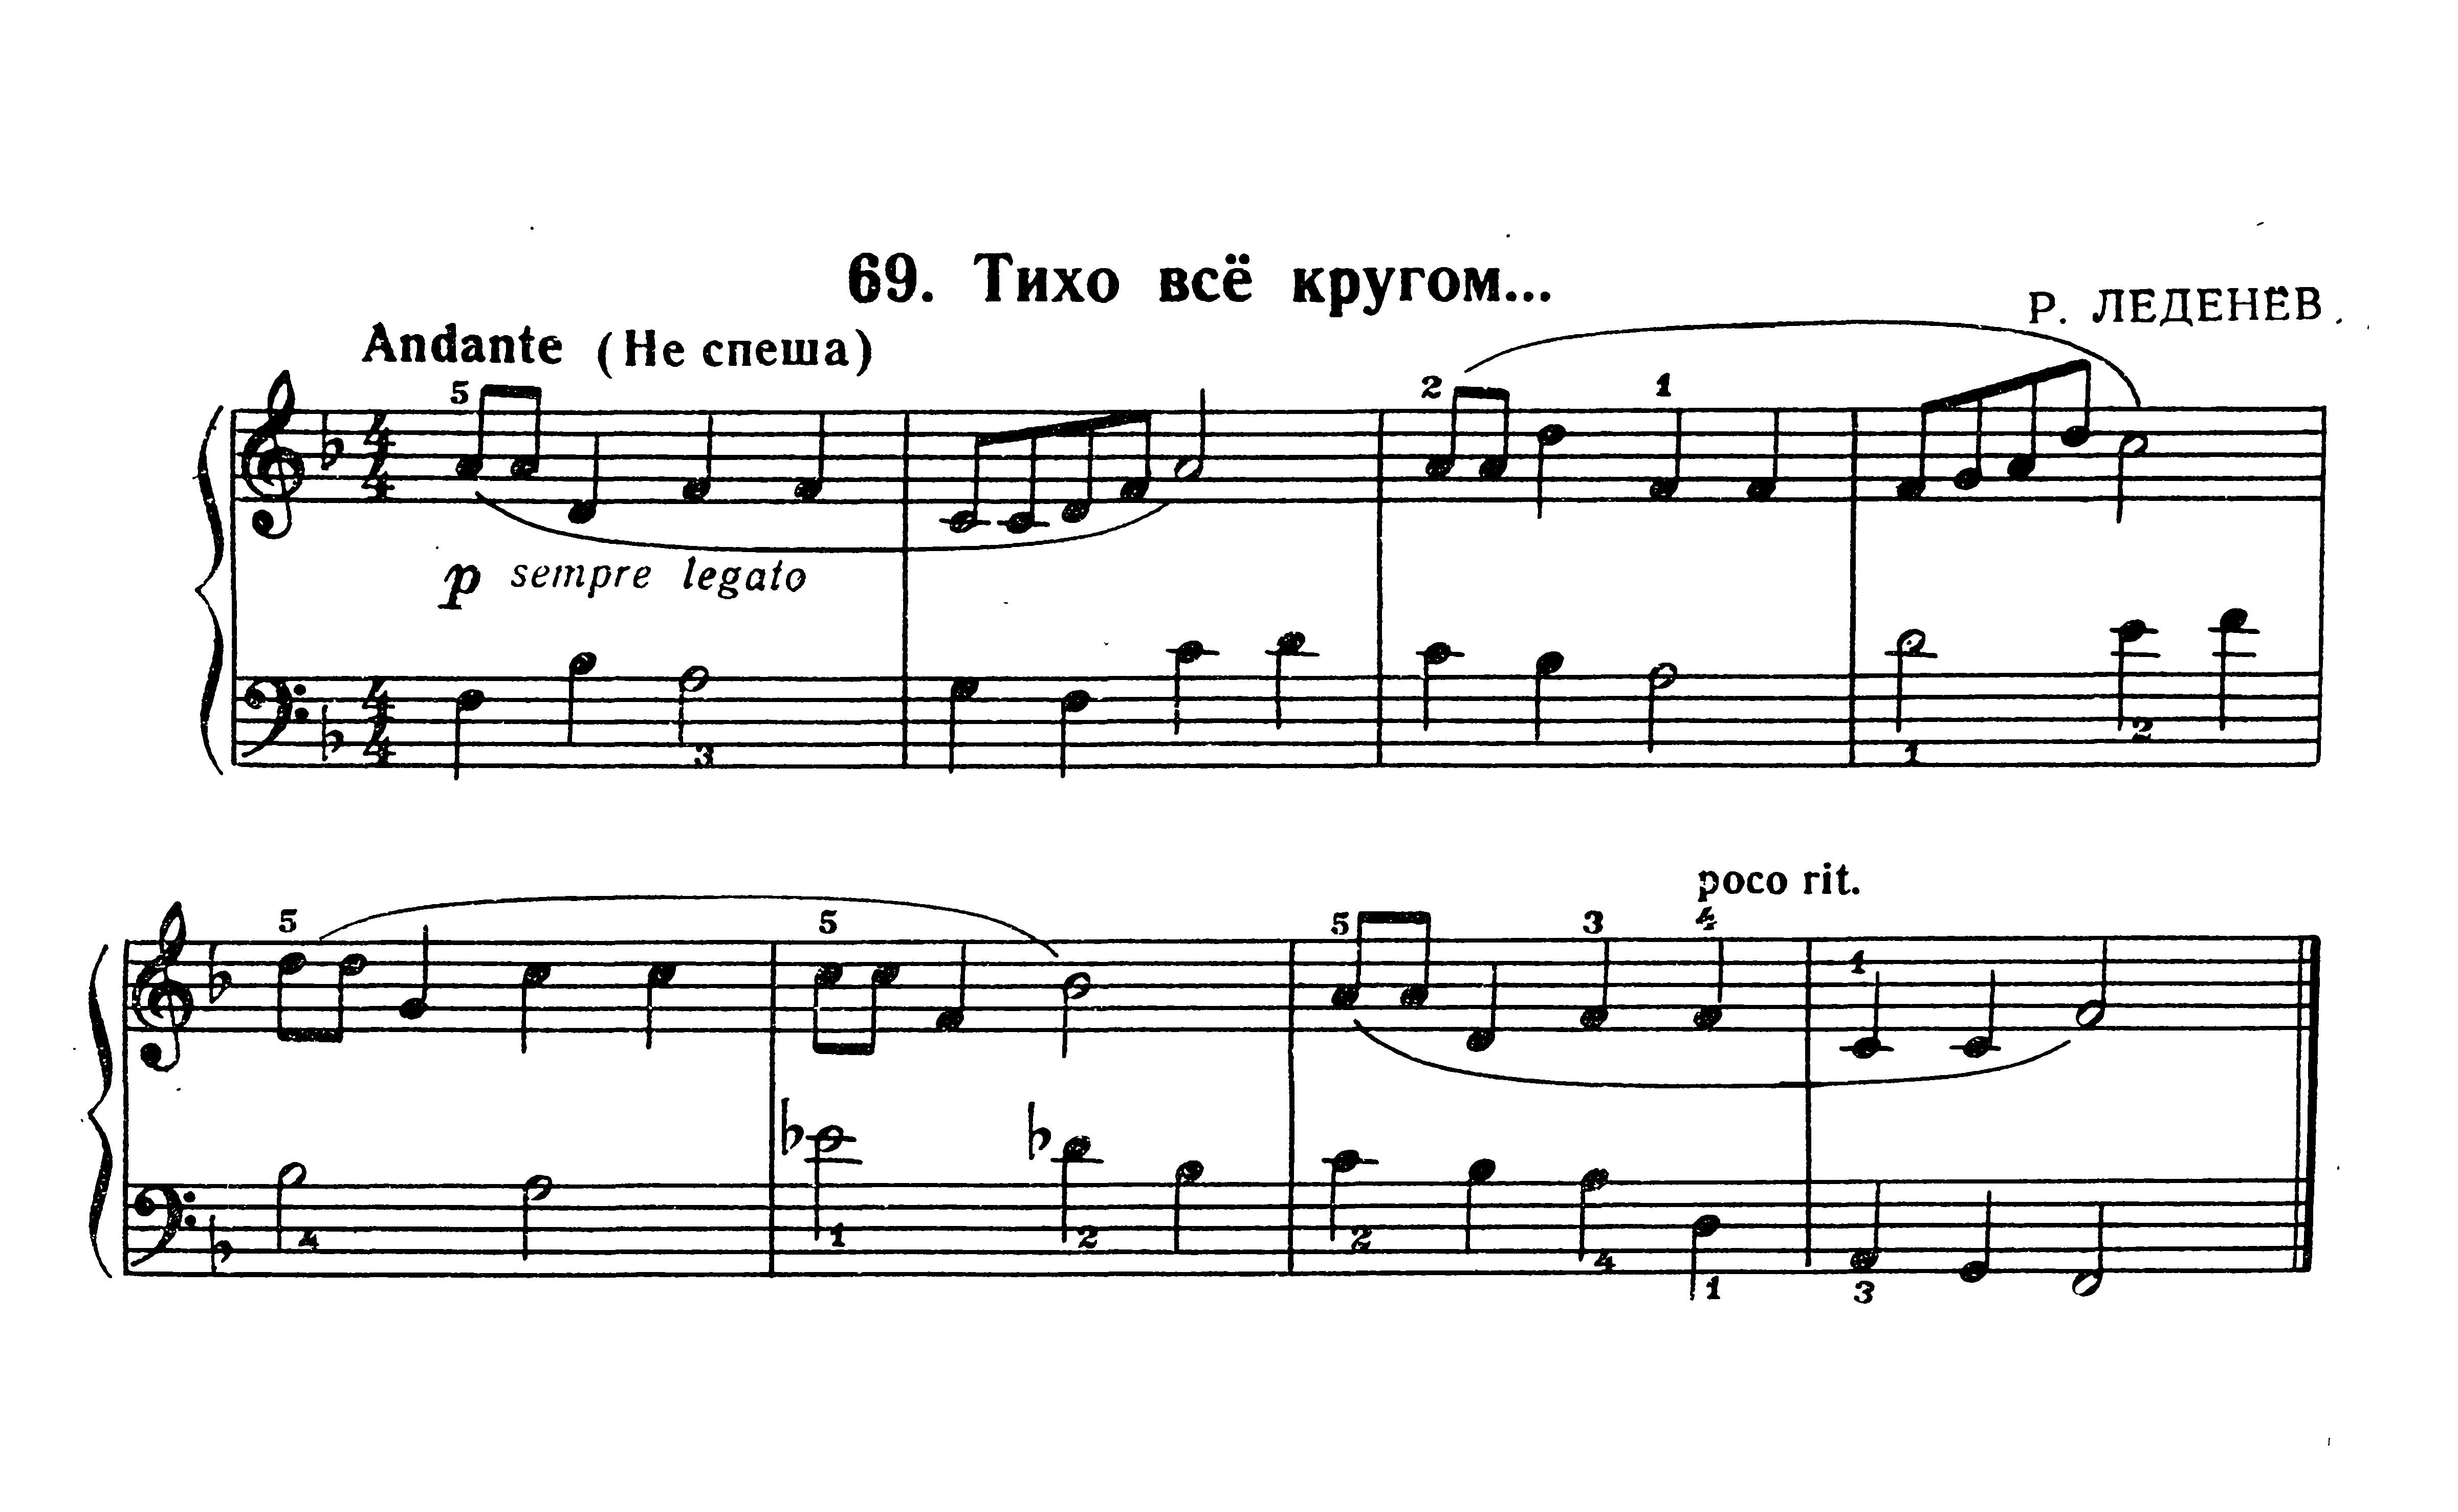 Пьесы №№66 - 100 из сборника "Фортепианная игра" (1 часть)